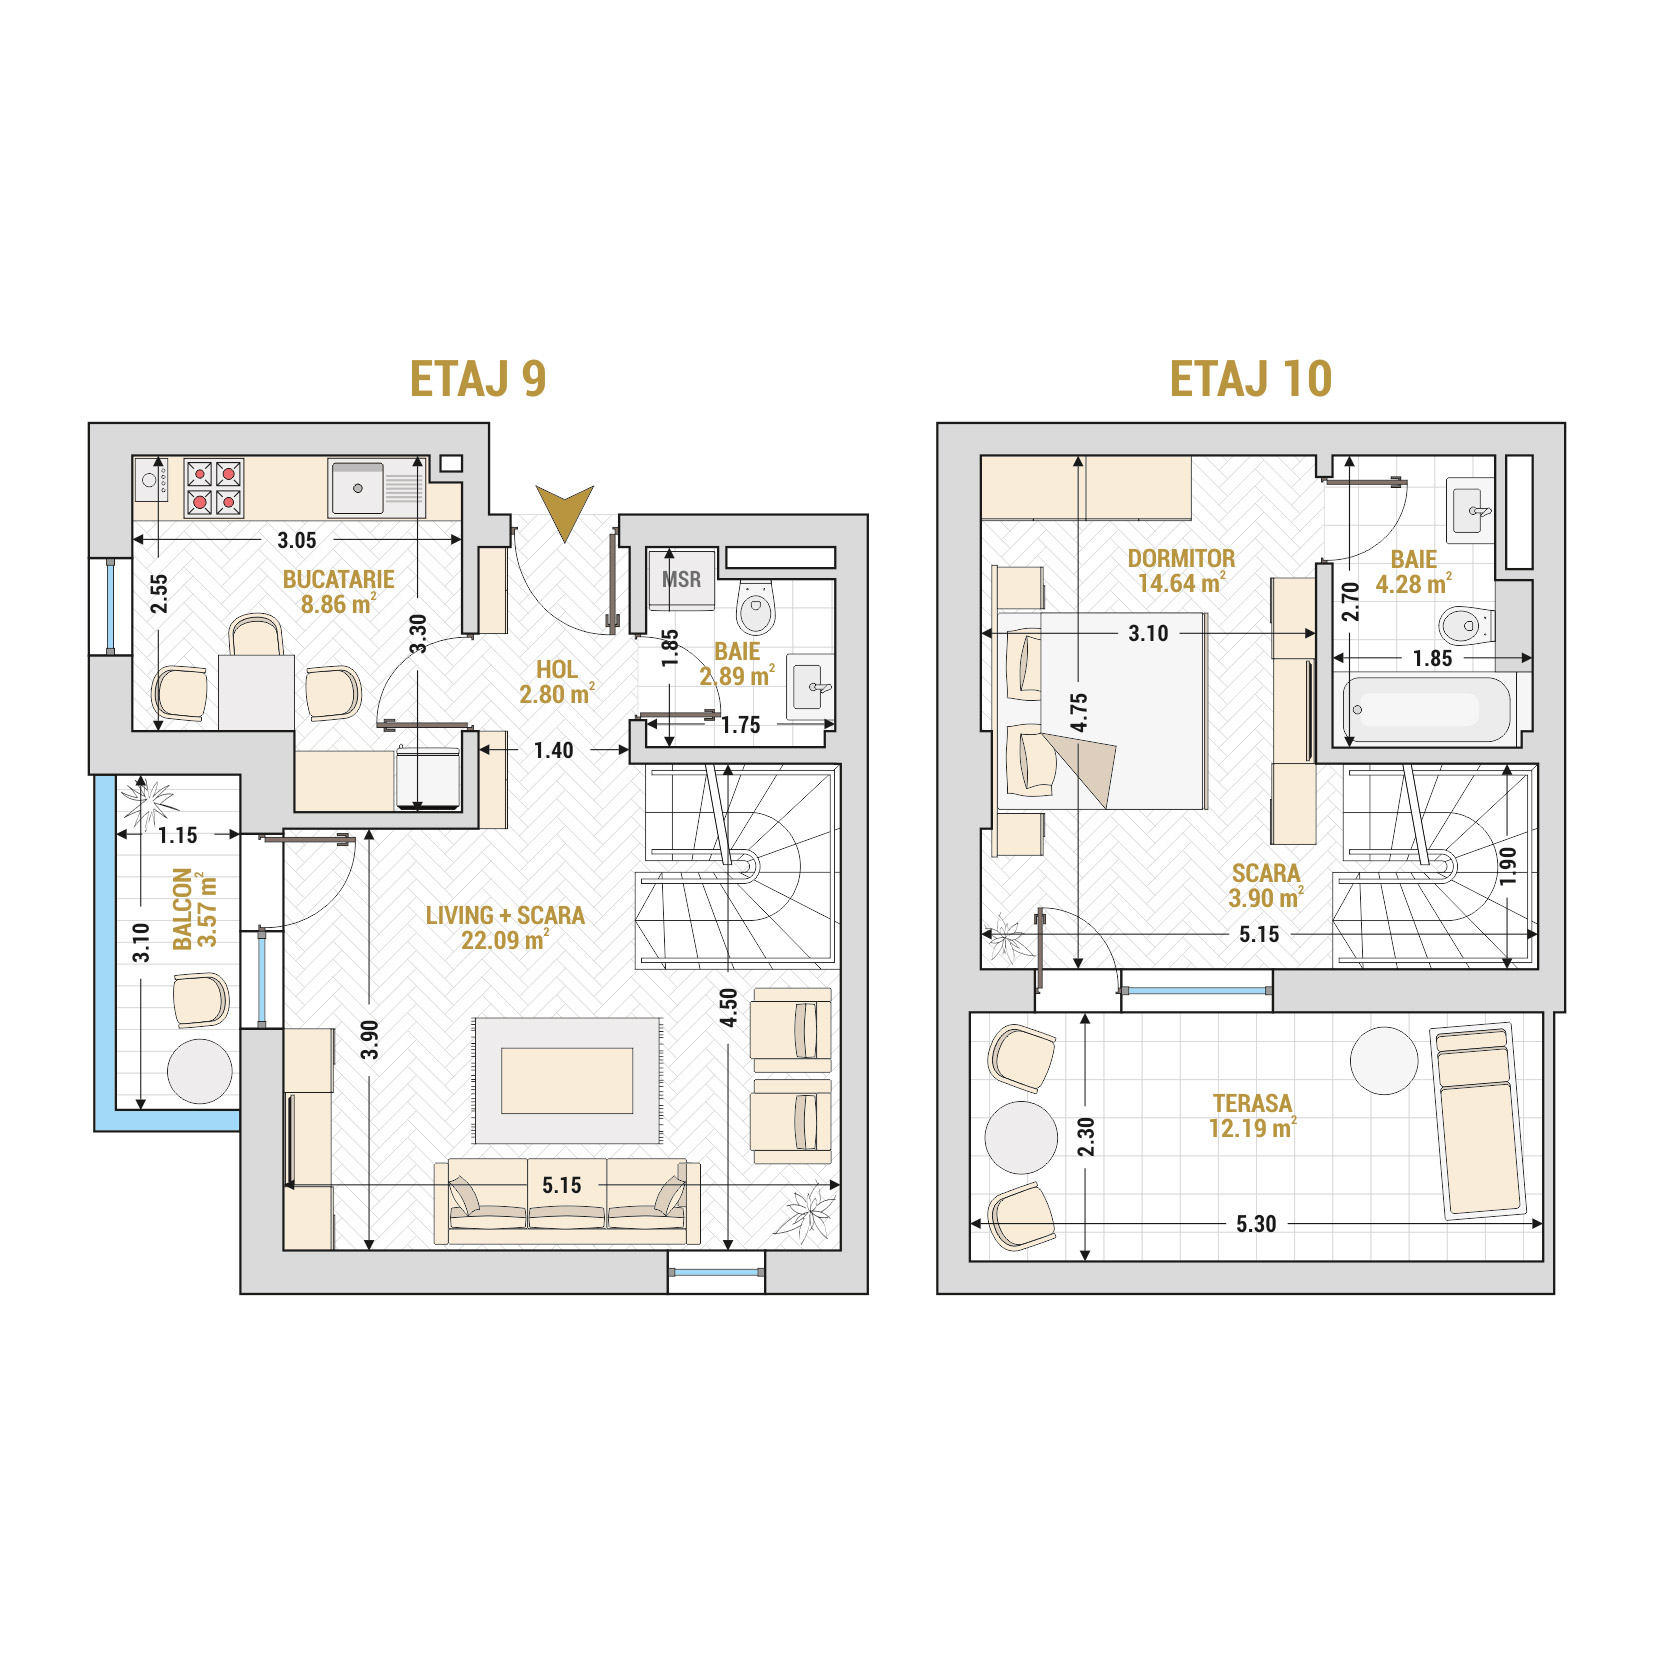 Penthouse 2 Camere Tip 2 Corp 1 - Drumul Taberei Residence - Apartamente de vanzare Bucuresti - Suprafata utila totala - 75.22 mp